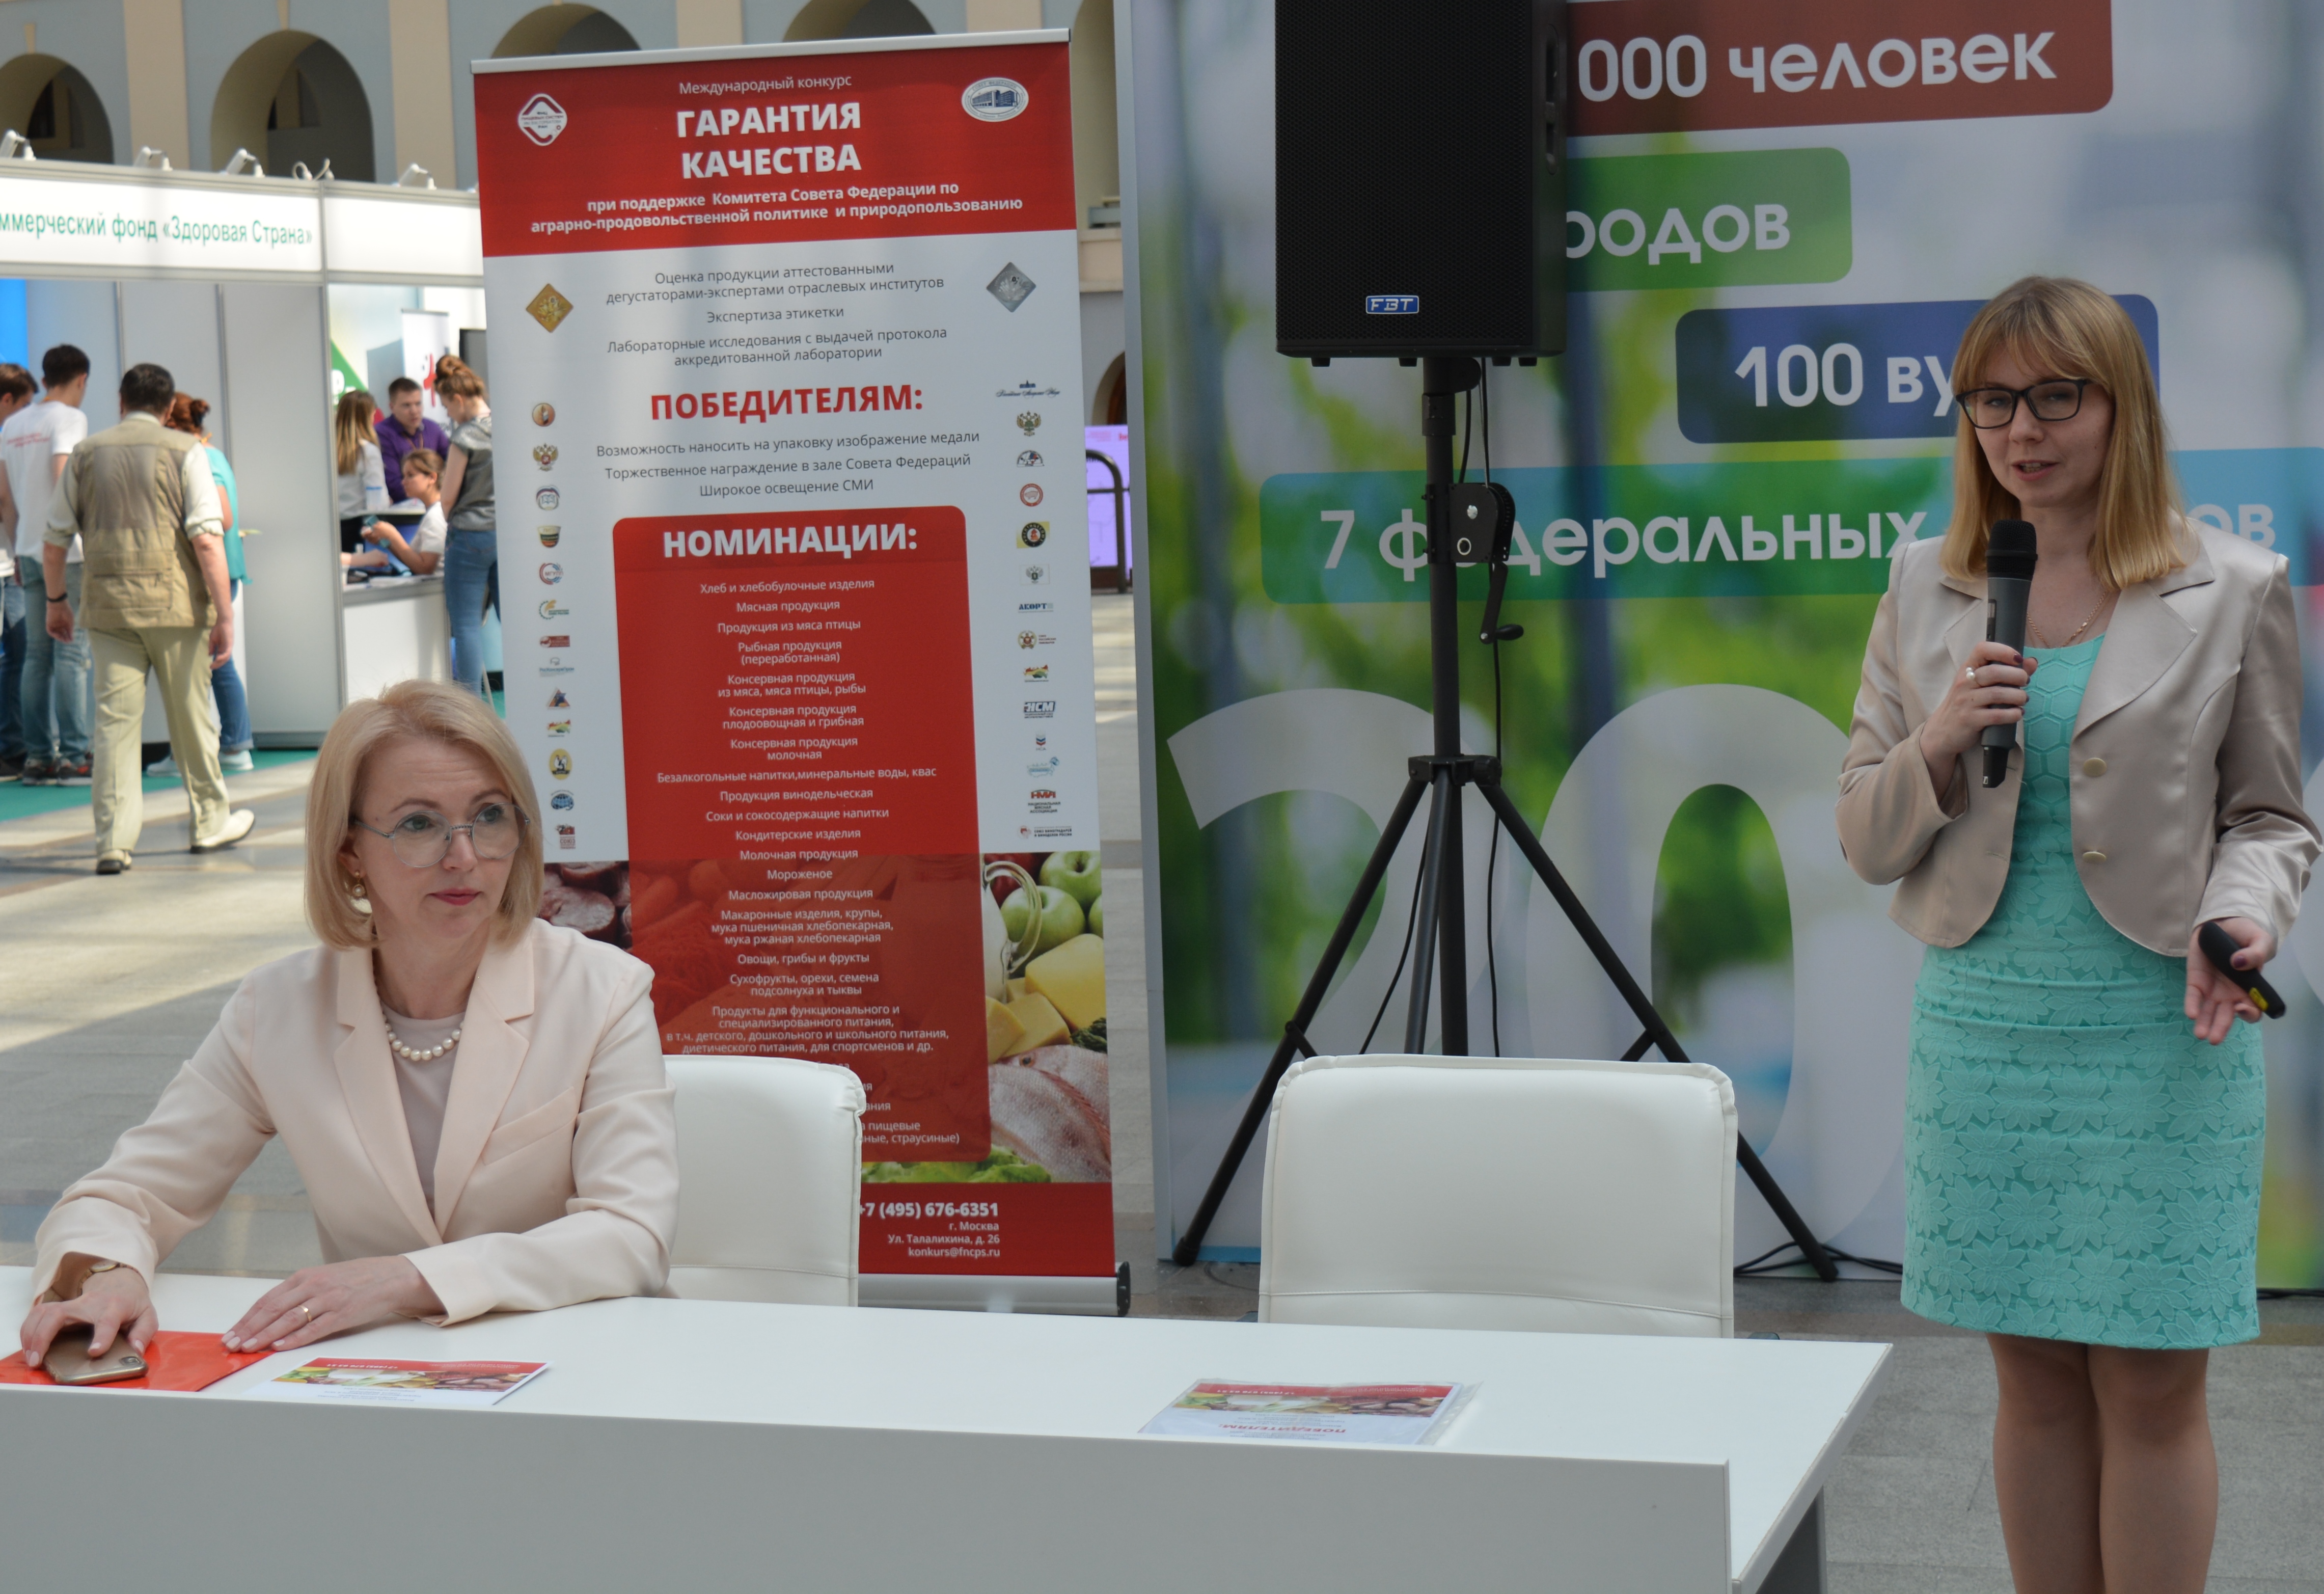 Презентовали конкурс "Гарантия качества-2019" на форуме "Здоровье нации - основа процветания России".